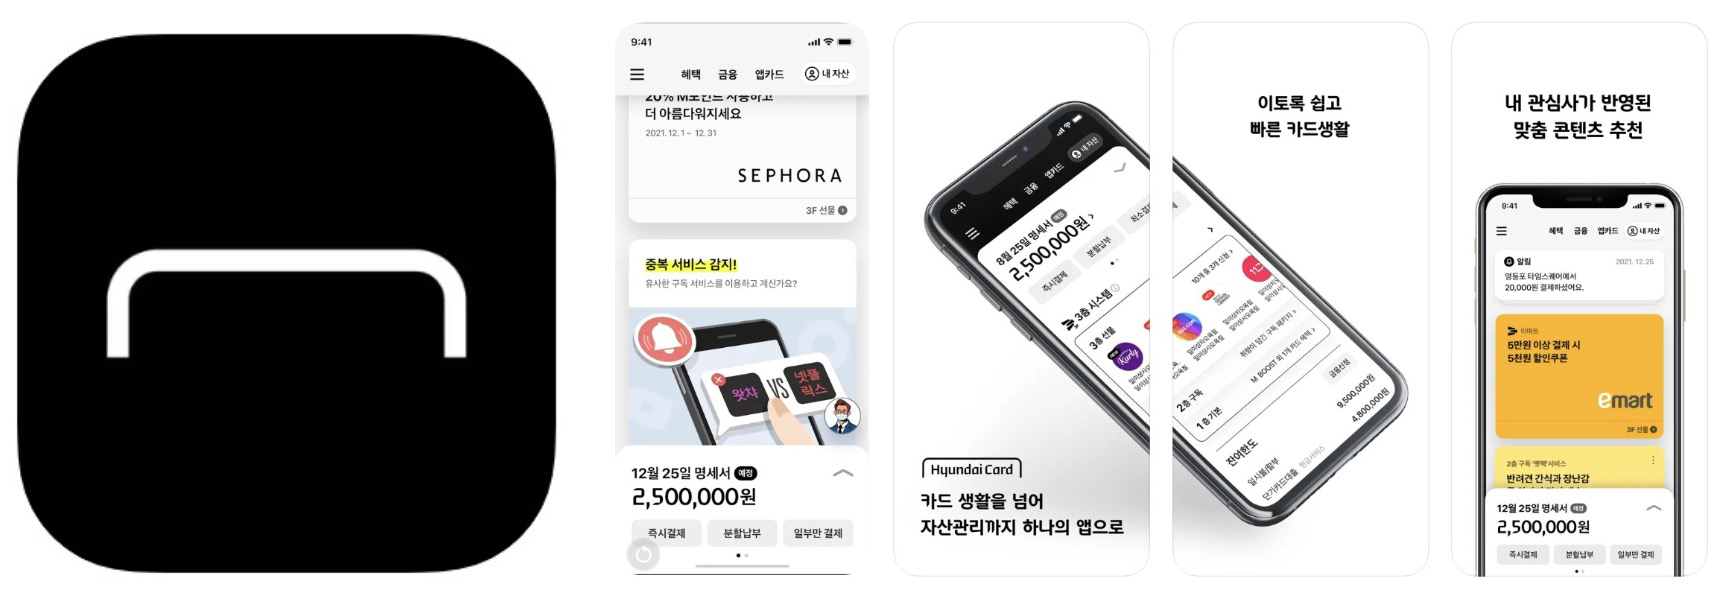 현대카드 앱 어플